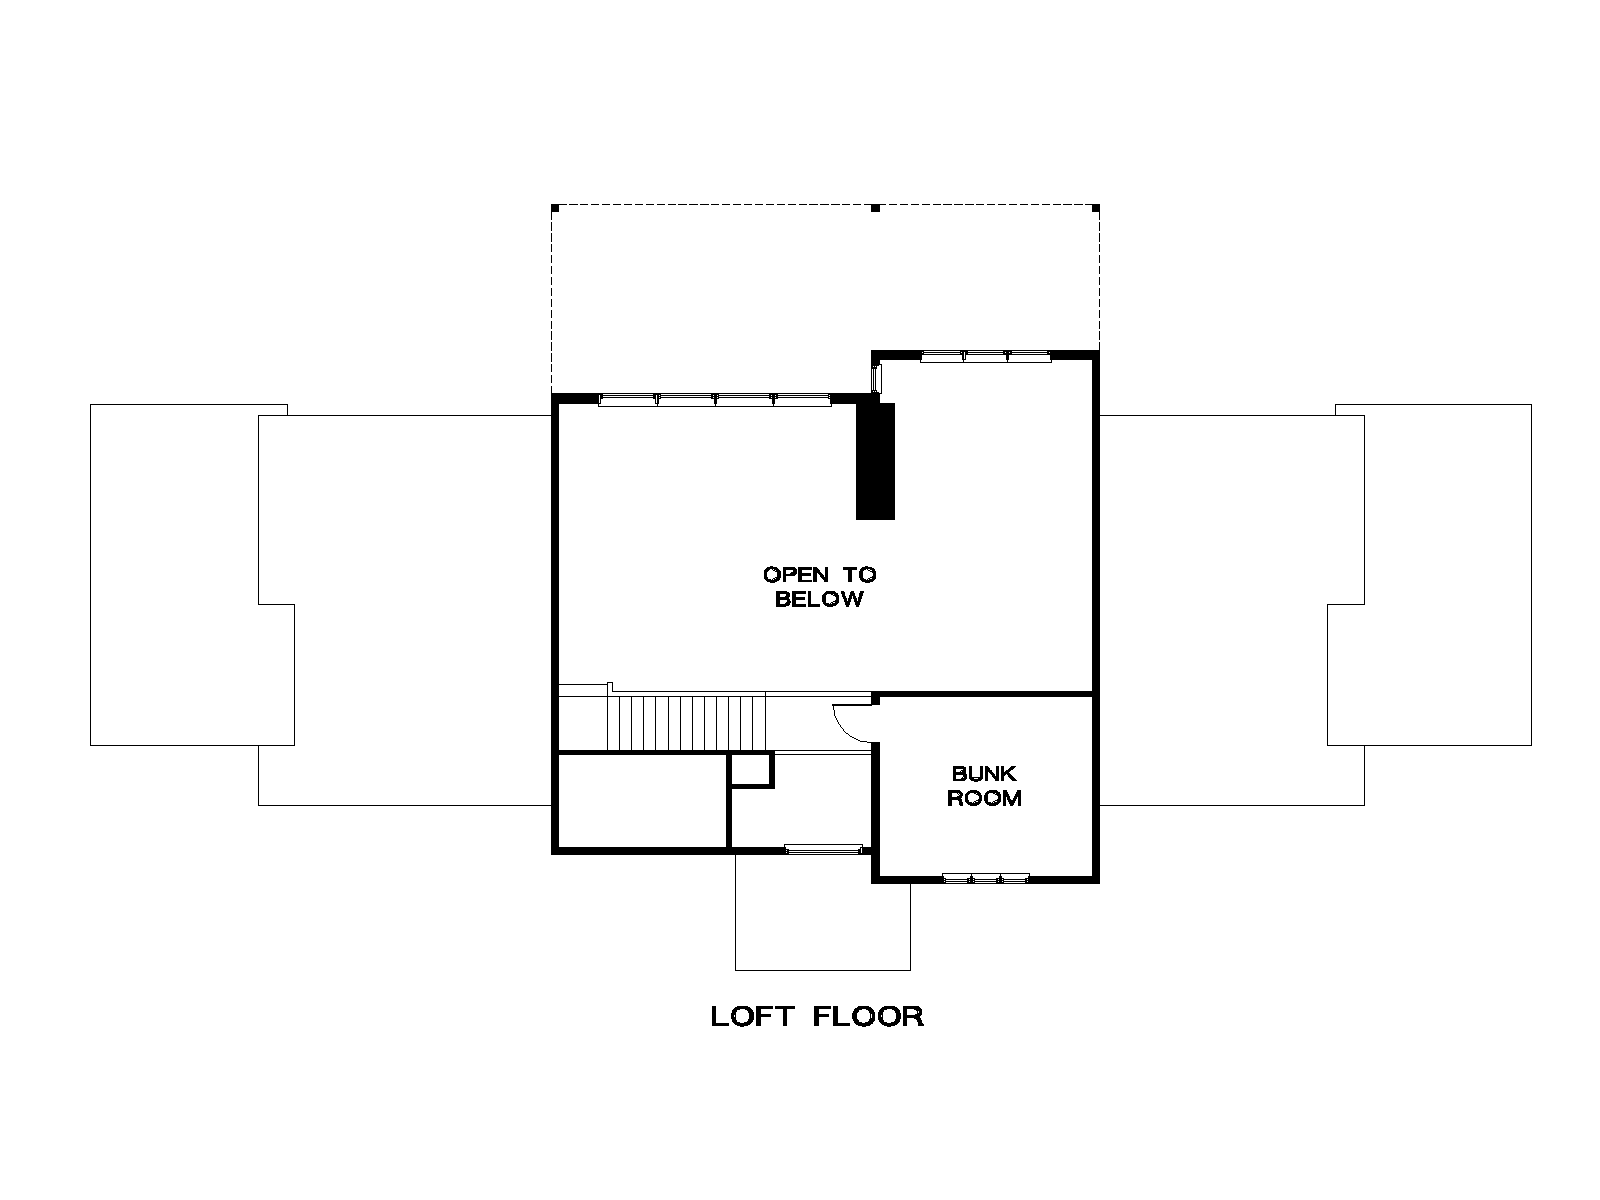 Loft Floor Plan.png